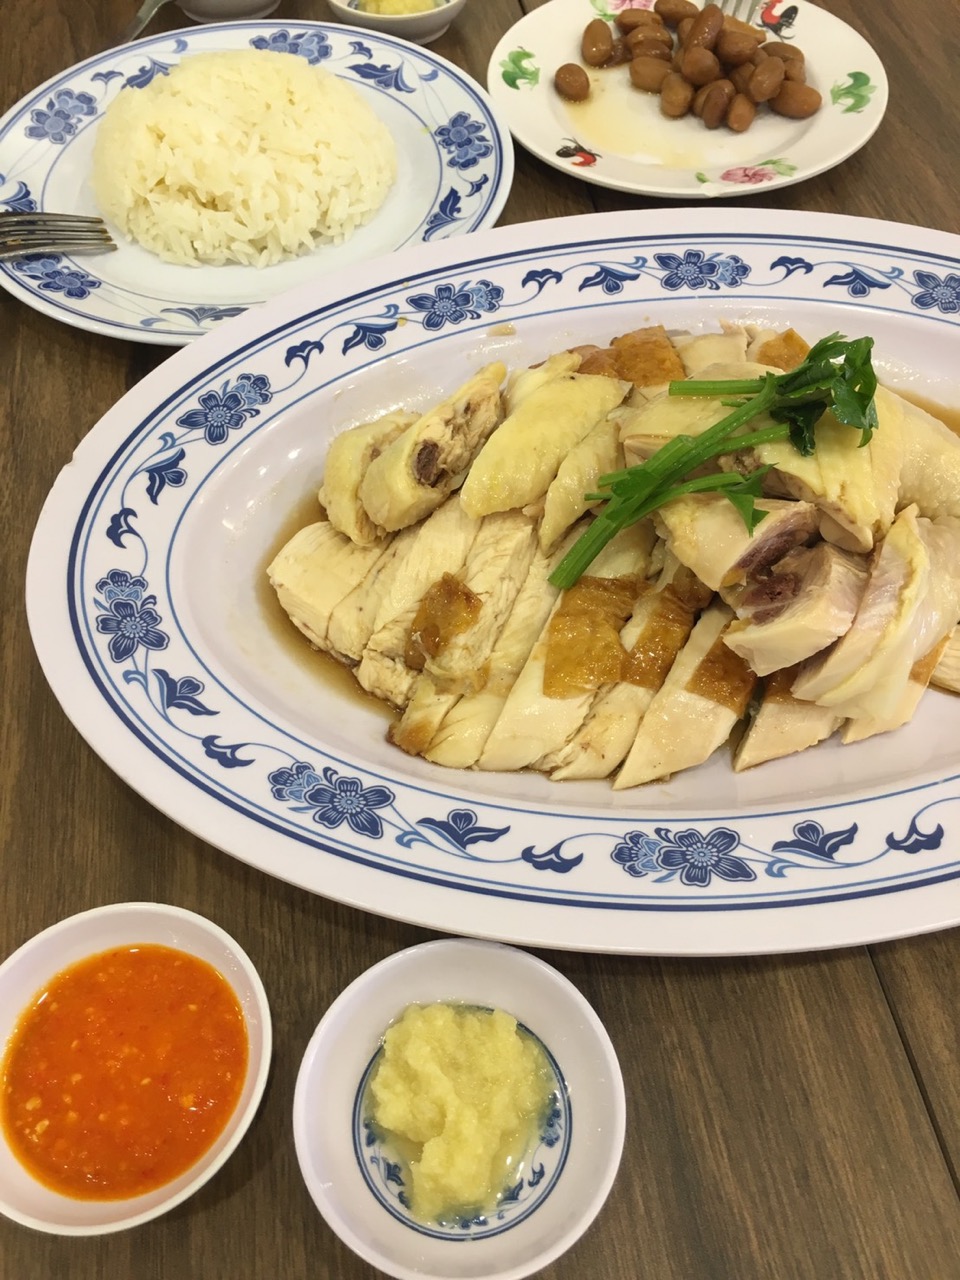 シンガポーリアンの食事情「3食外食生活を助けるホーカーセンター」